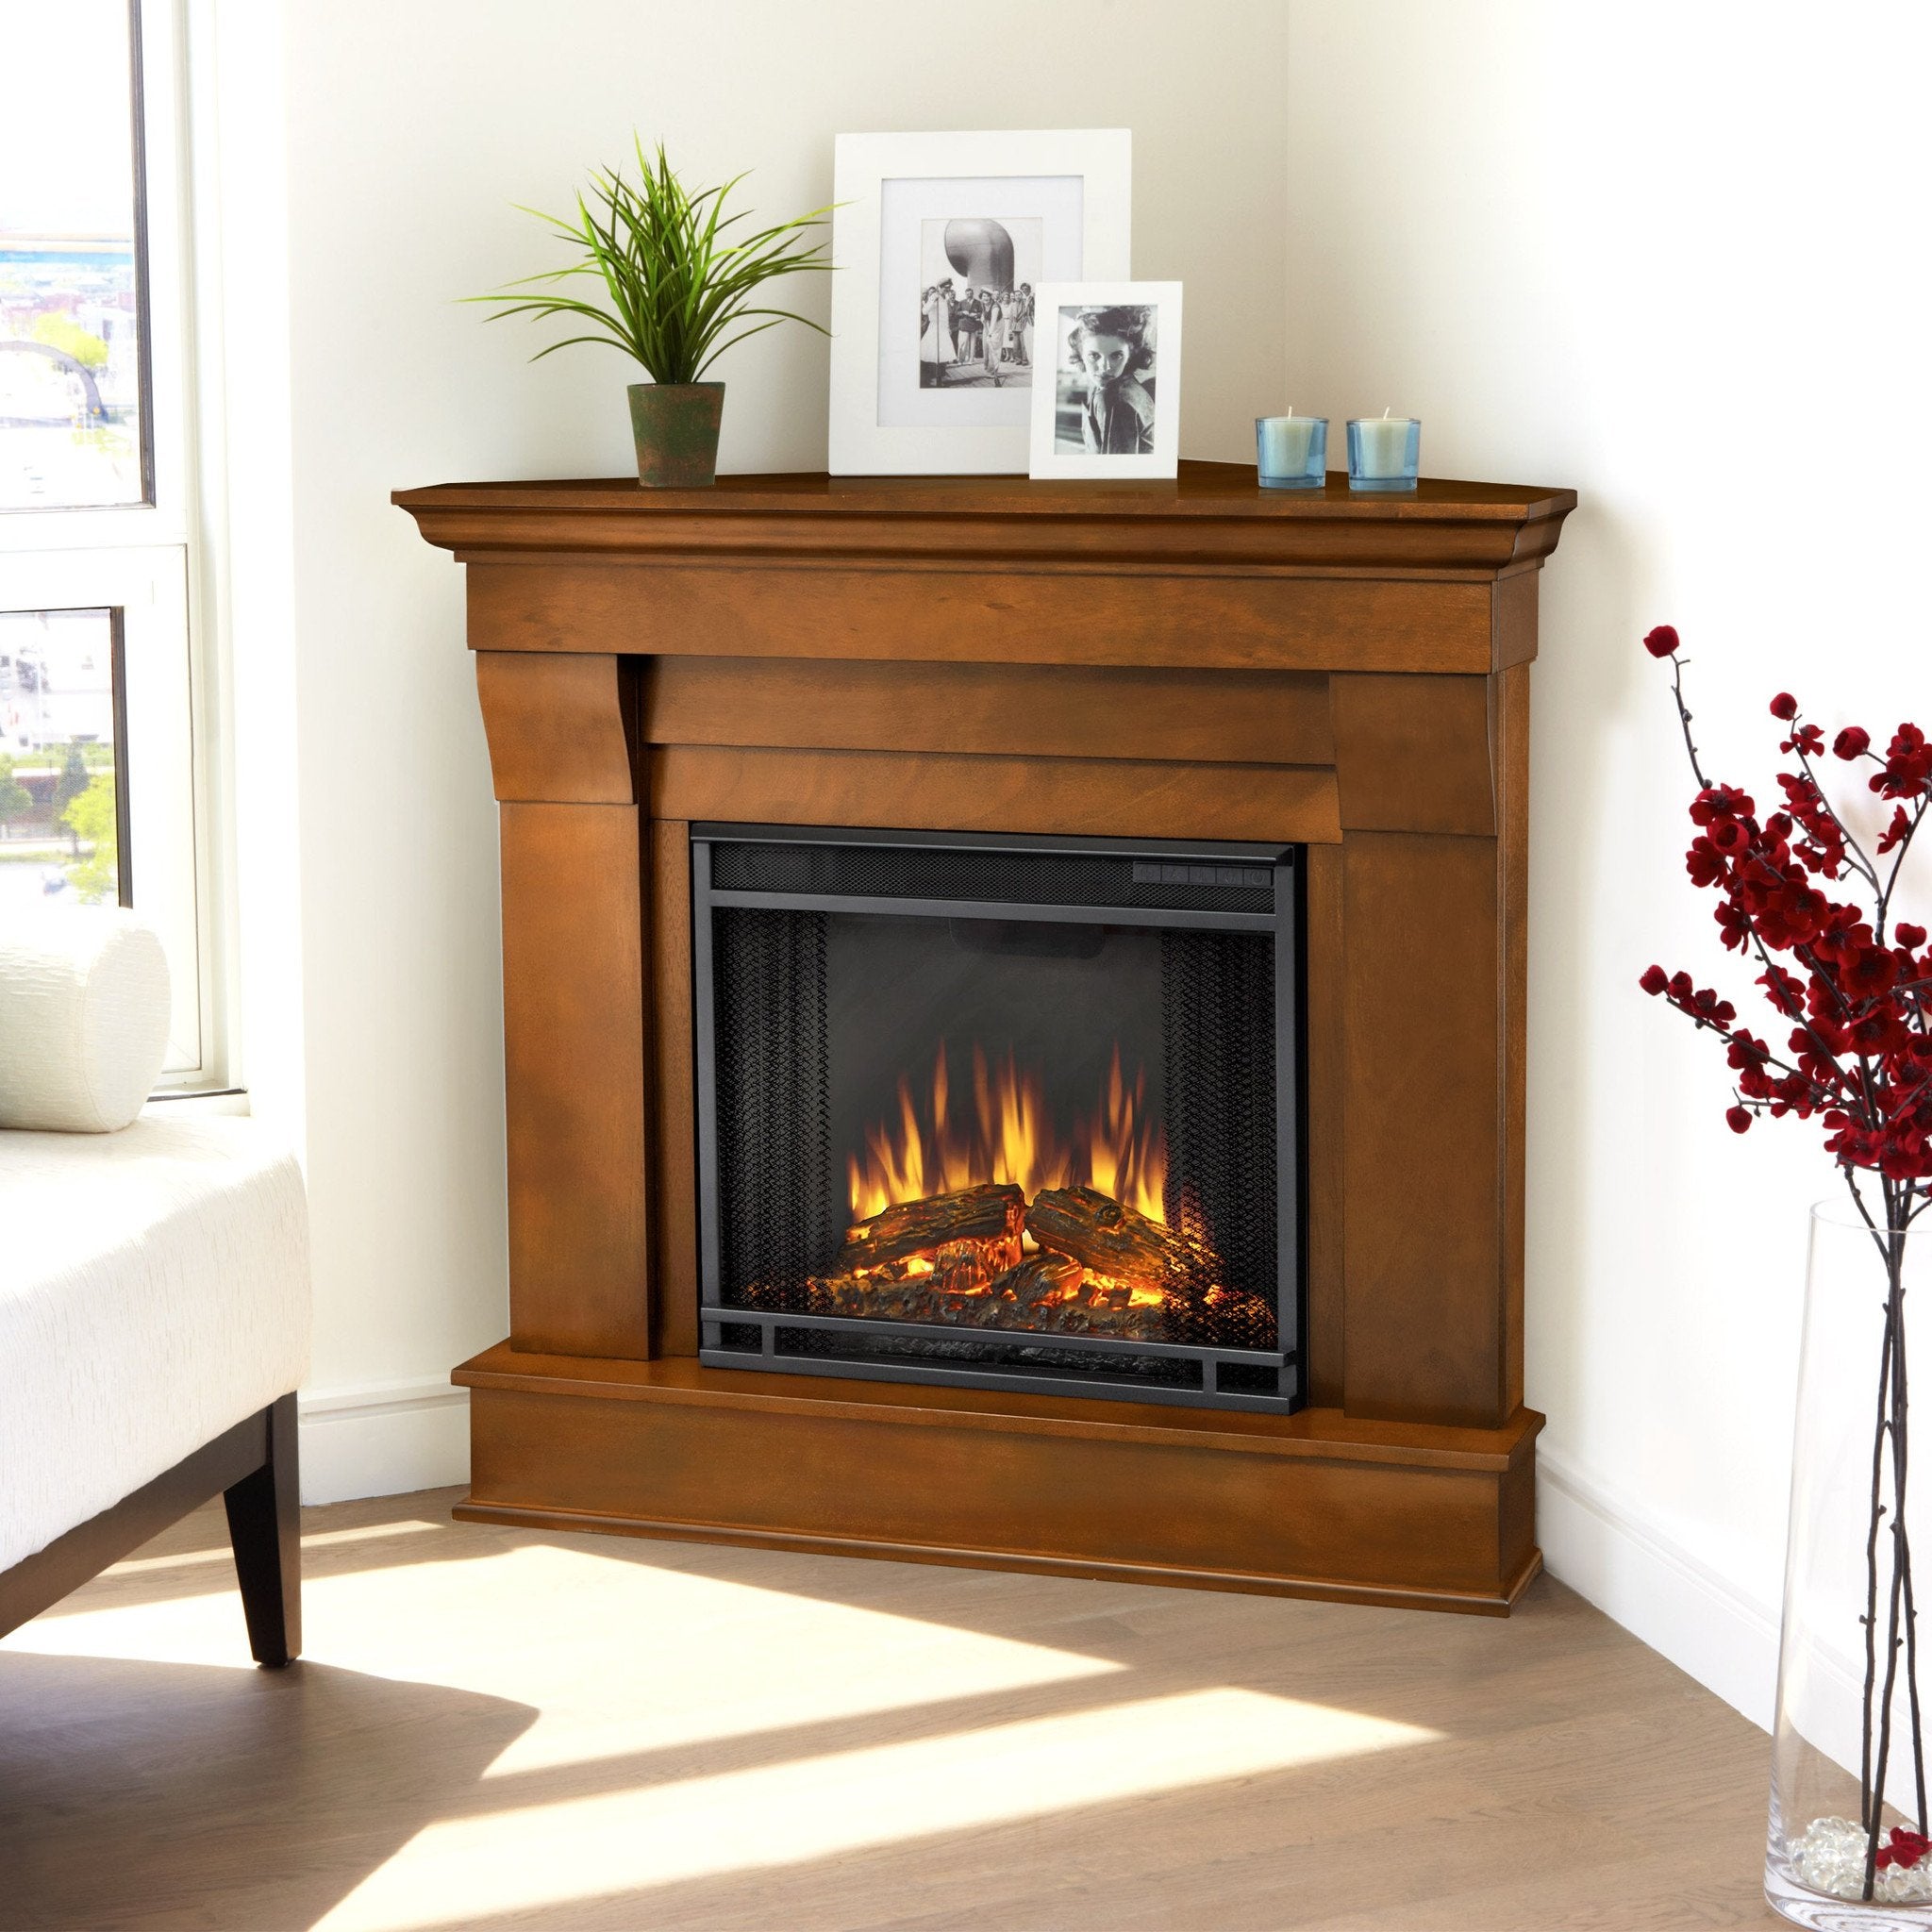 Corner Fireplaces | Hi-Tech Fire Features | Shop Now!